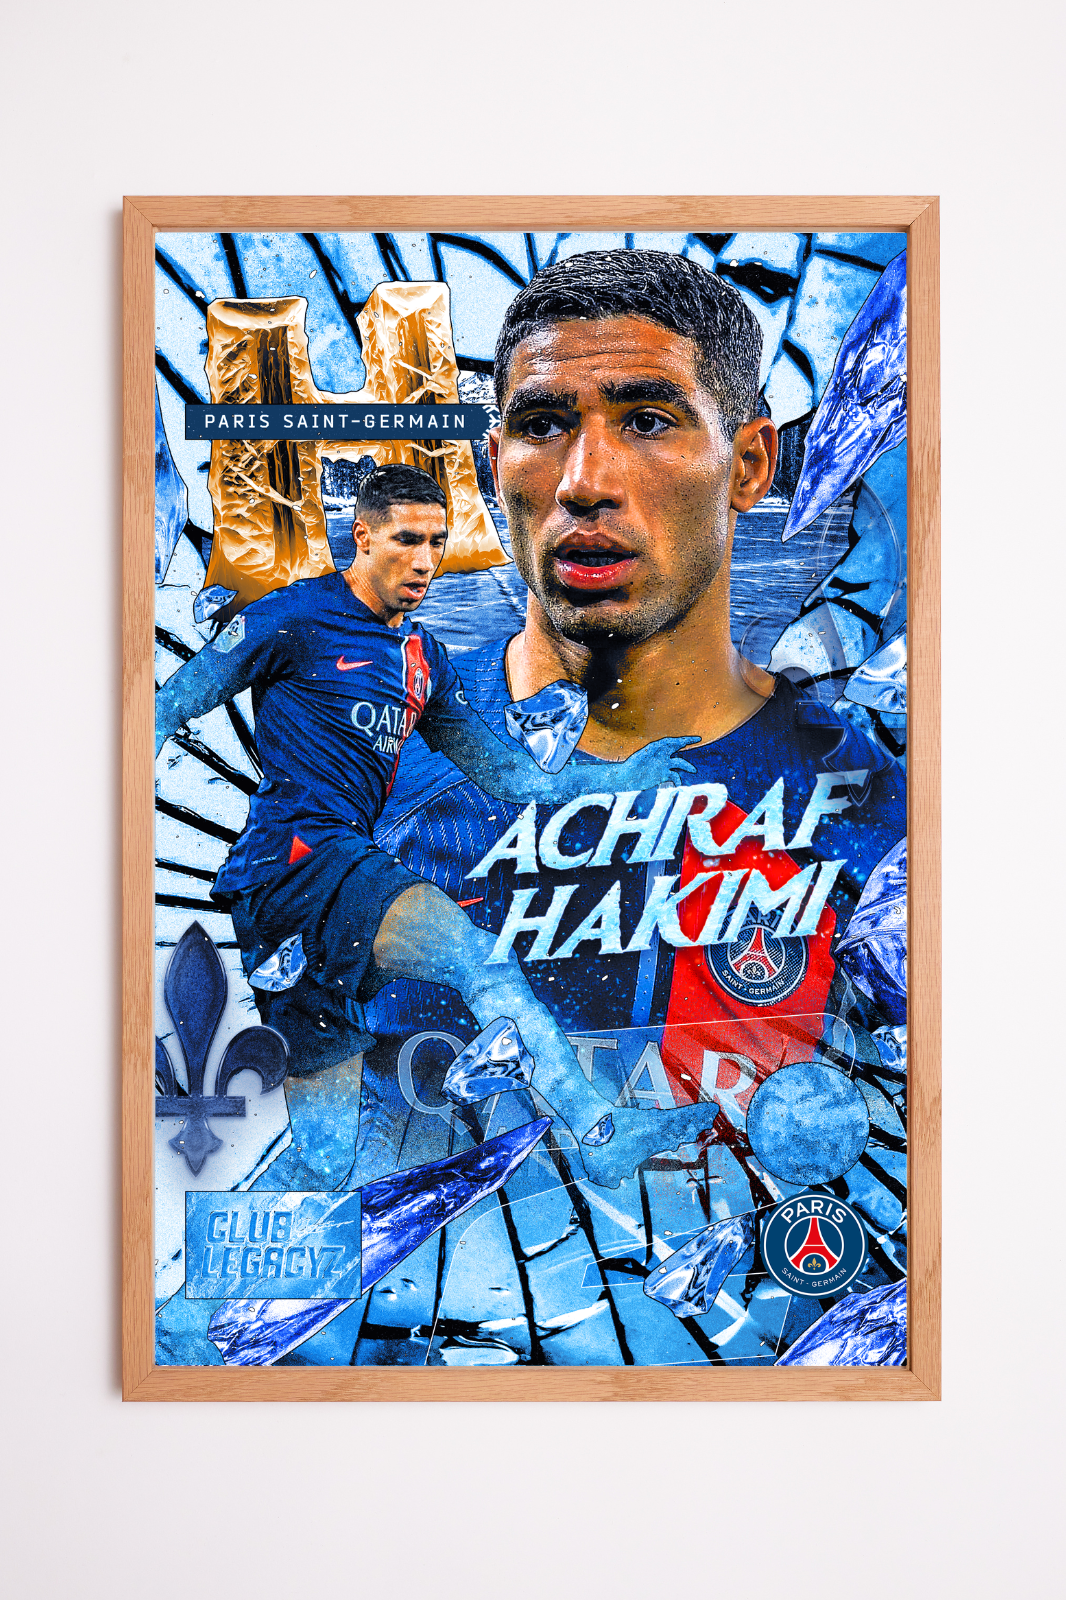 Paris Saint-Germain - Achraf Hakimi Frozen Poster limited to 100